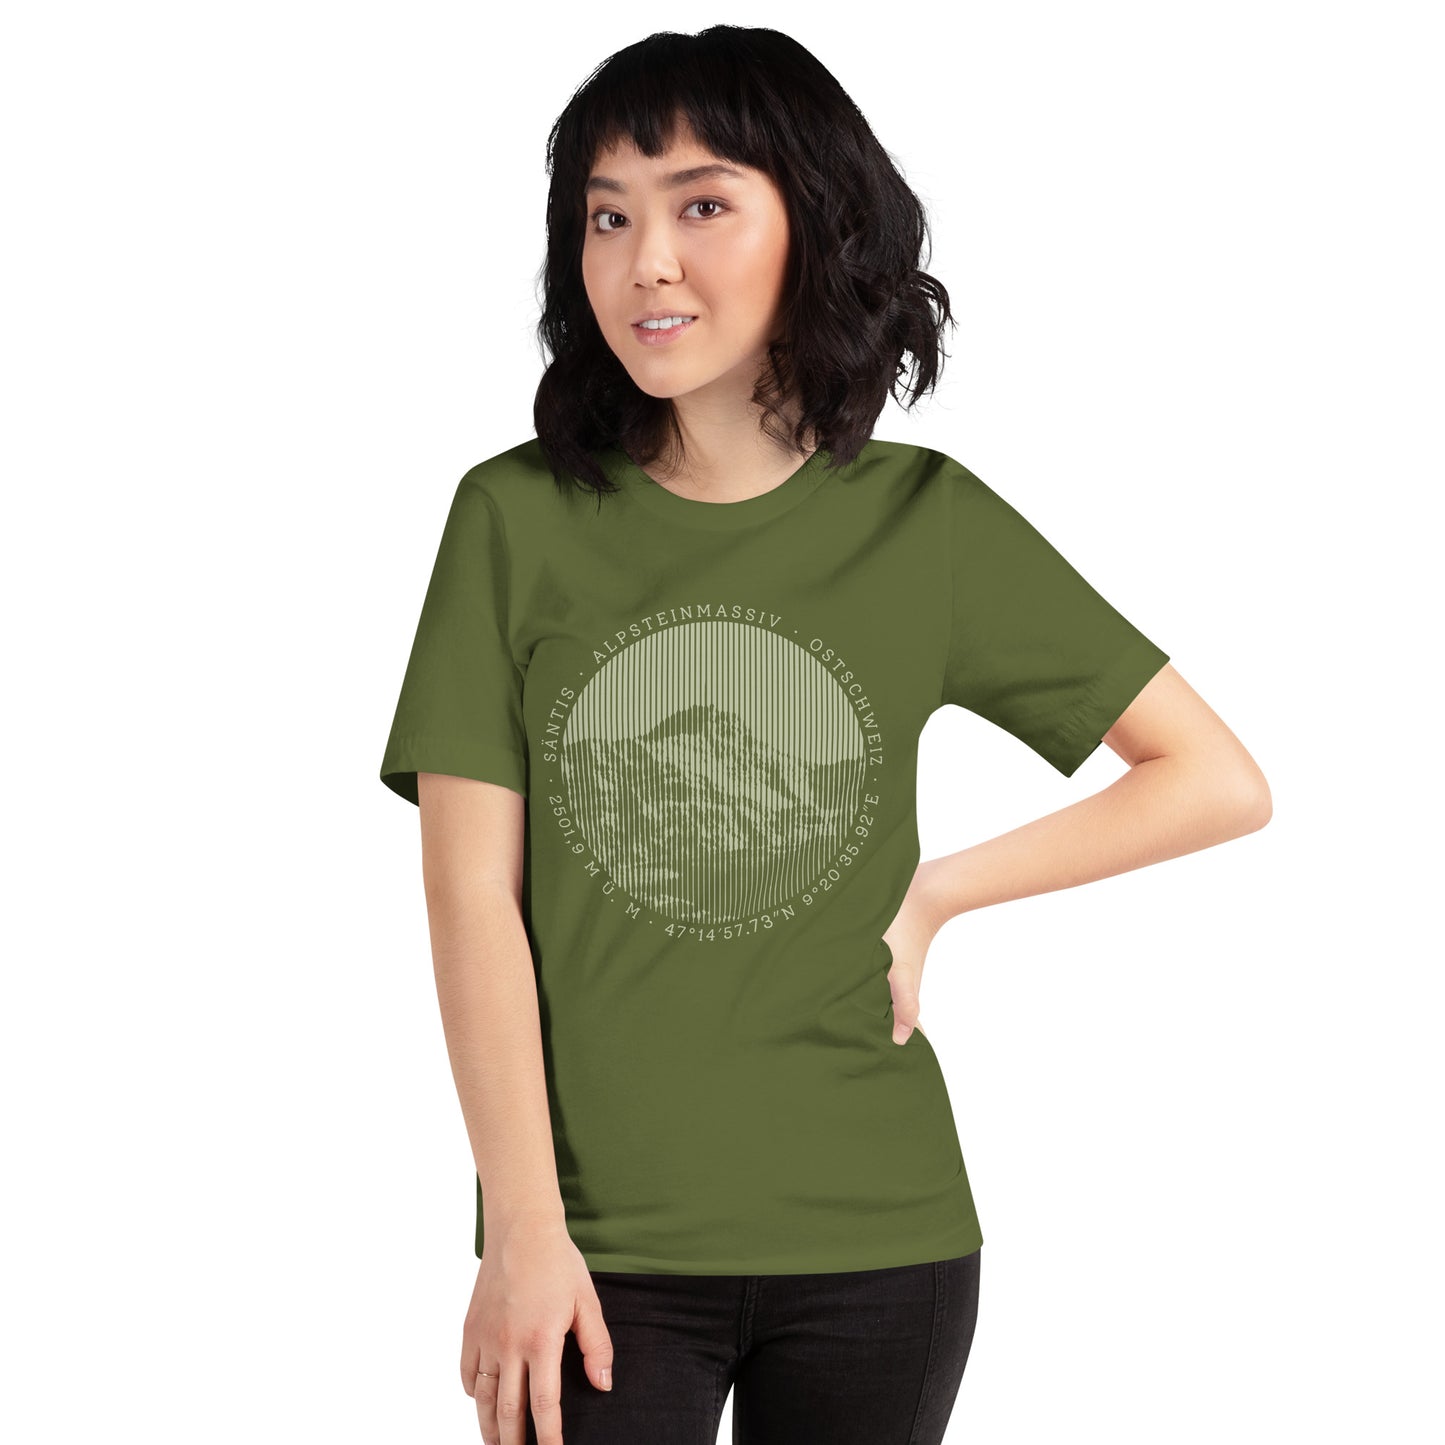 Diese Bergbegeisterte trägt ein olivgrünes Damen T-Shirt von Vallada mit einem Aufdruck des Säntis-Gipfels. Dieses T-Shirt ist ein Statement für ihren Enthusiasmus für diesen Berg in den Appenzeller Alpen.